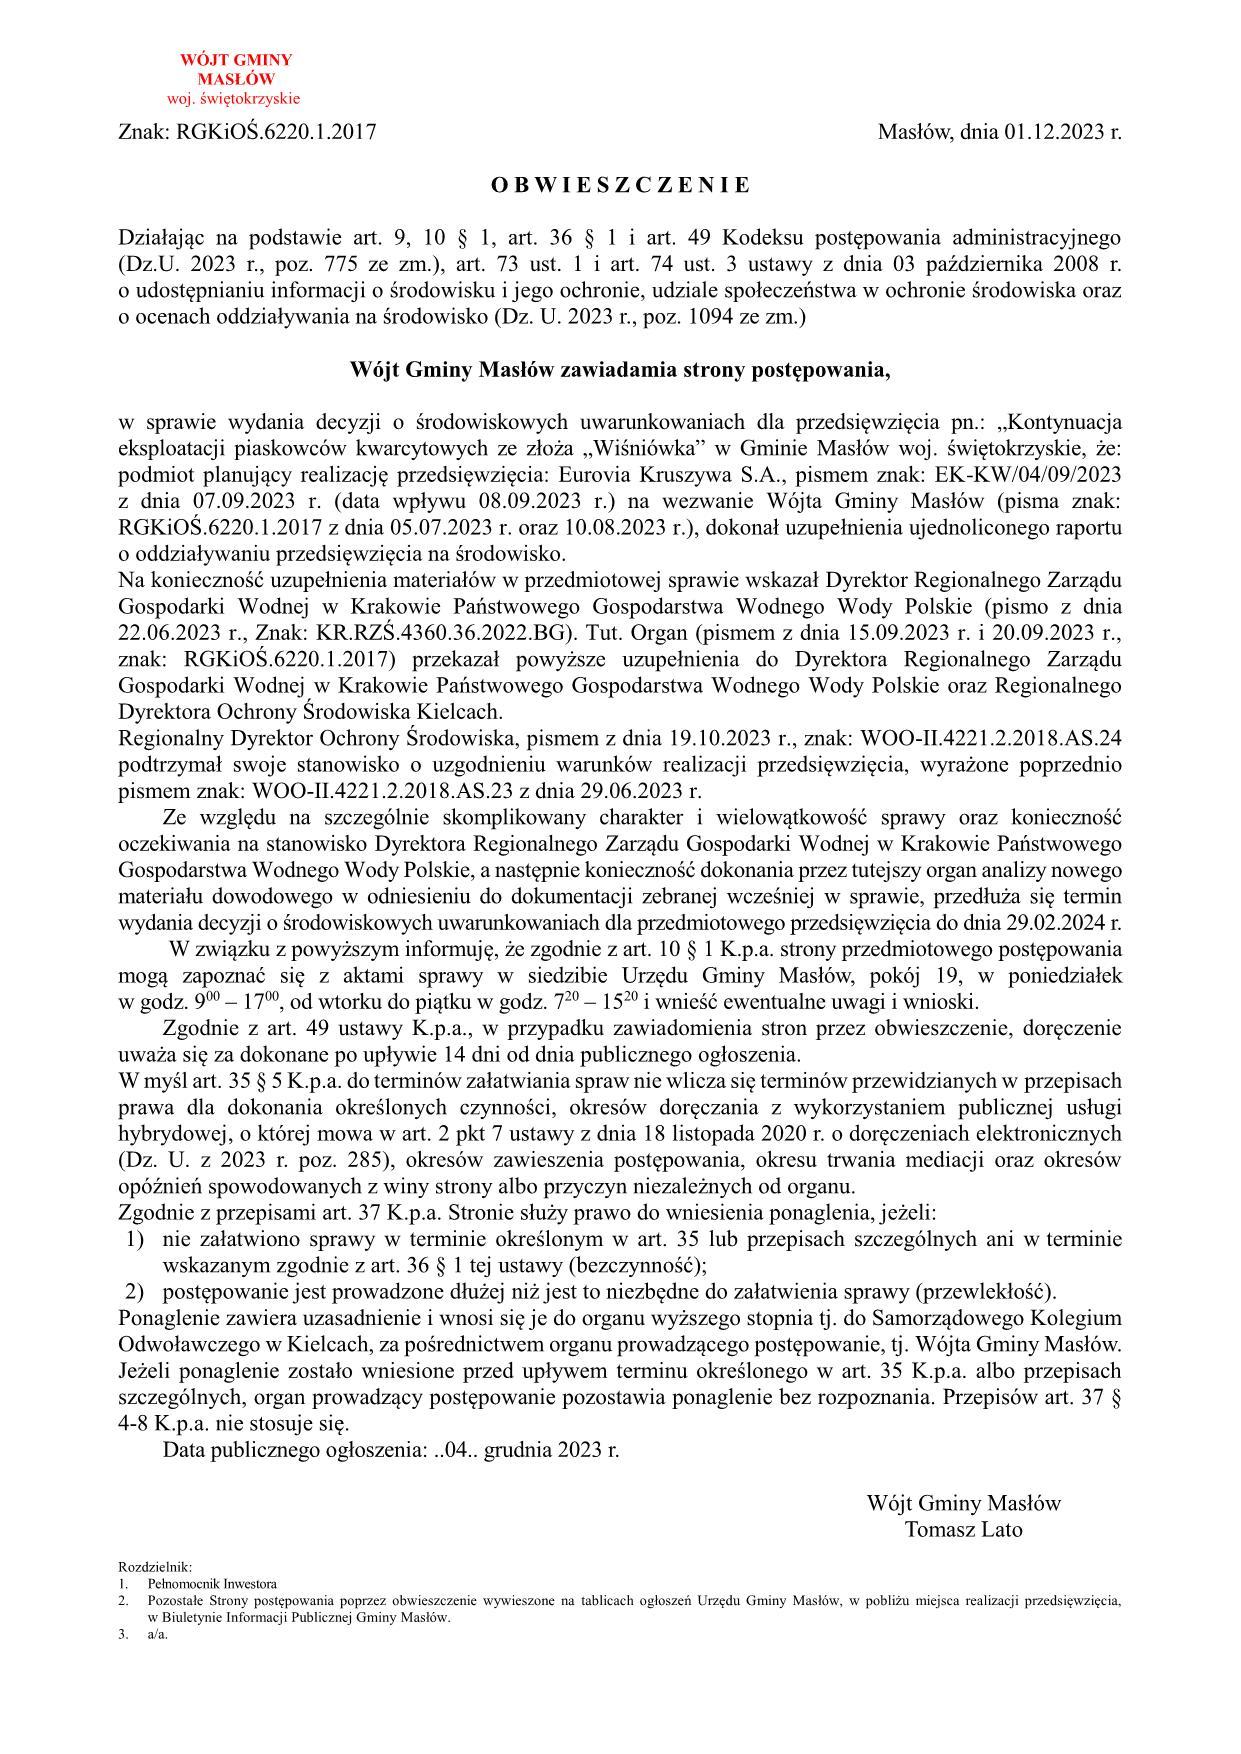 29U - Obwieszczenie - Wiśniówka 2023-12-01_1.jpg